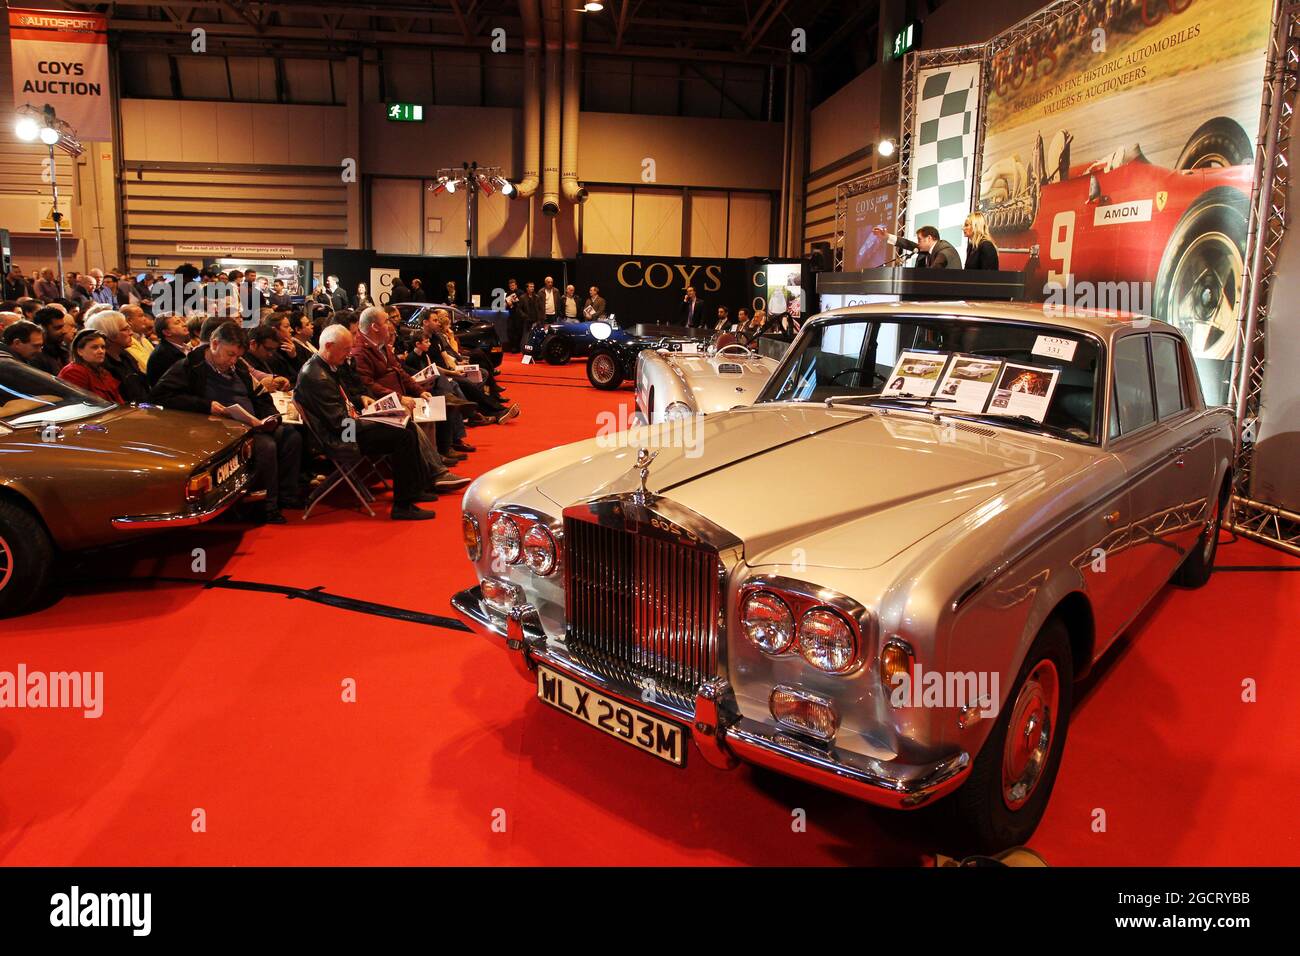 Der Rolls Royce von Freddie Mercury (GBR) wird auf der Coys Auction bei Autosport International verkauft. Autosport International, Samstag 12. Januar 2013. National Exhibition Centre, Birmingham, England. Stockfoto